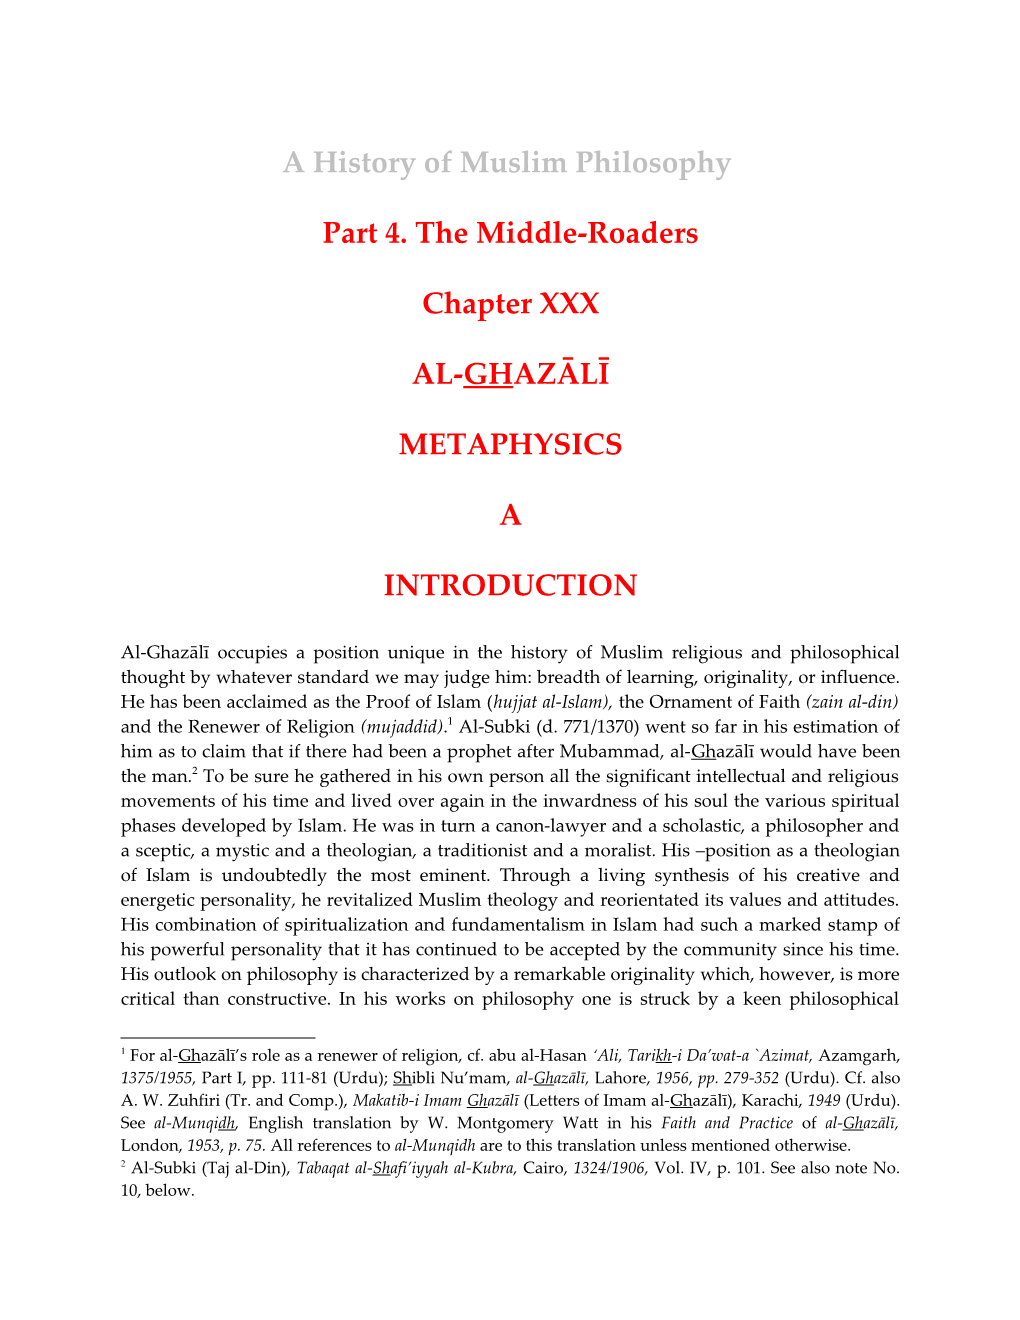 Al-Ghazali Life and Works: History of Muslim Philosophy